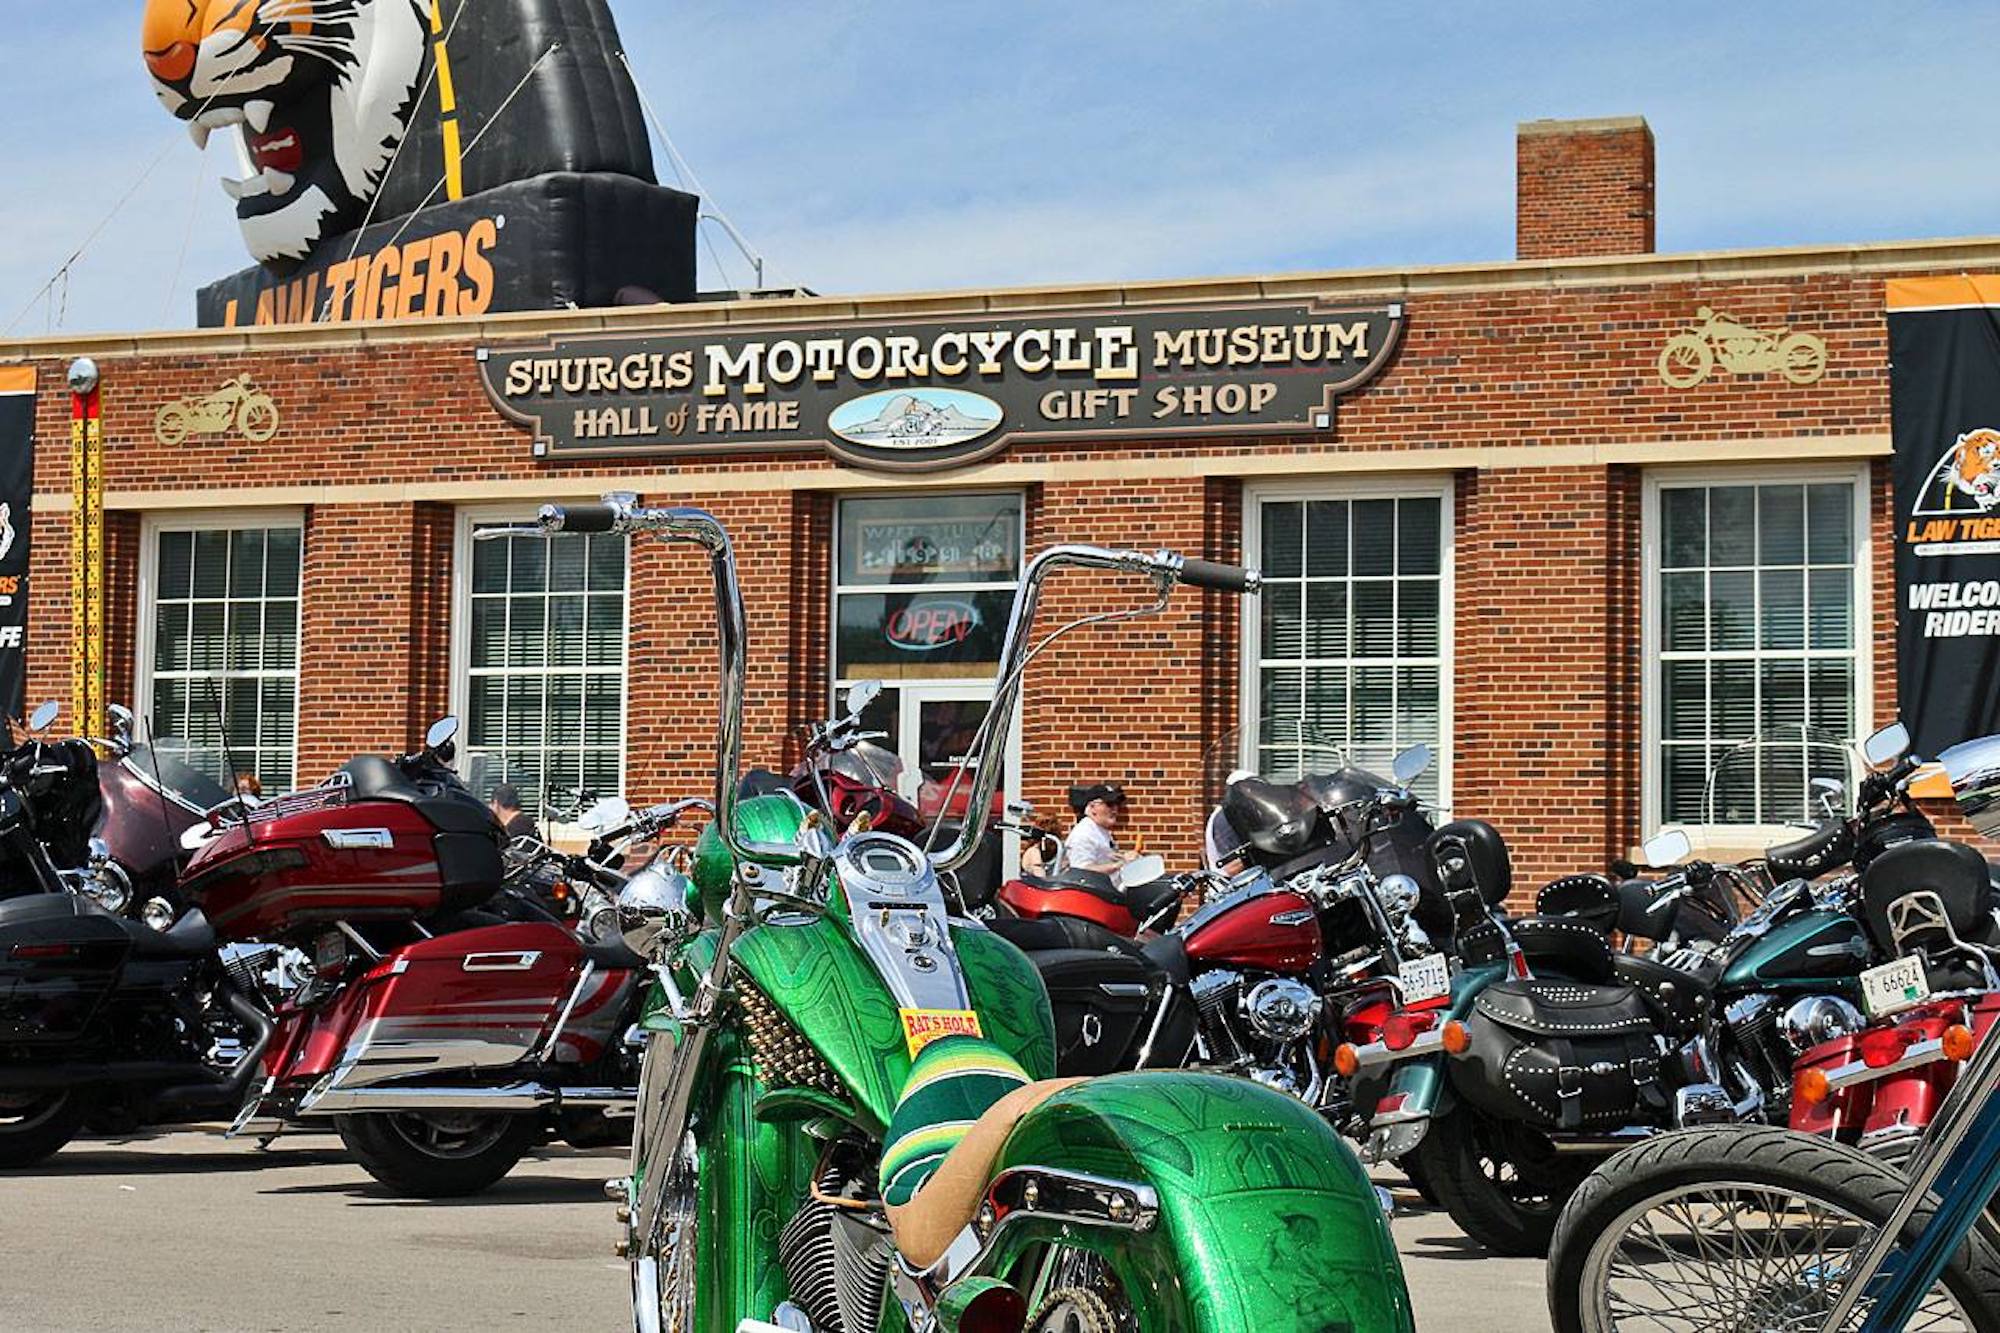 斯特吉斯摩托车博物馆名人堂。媒体来源来自斯特吉斯摩托车博物馆的Facebook页面。